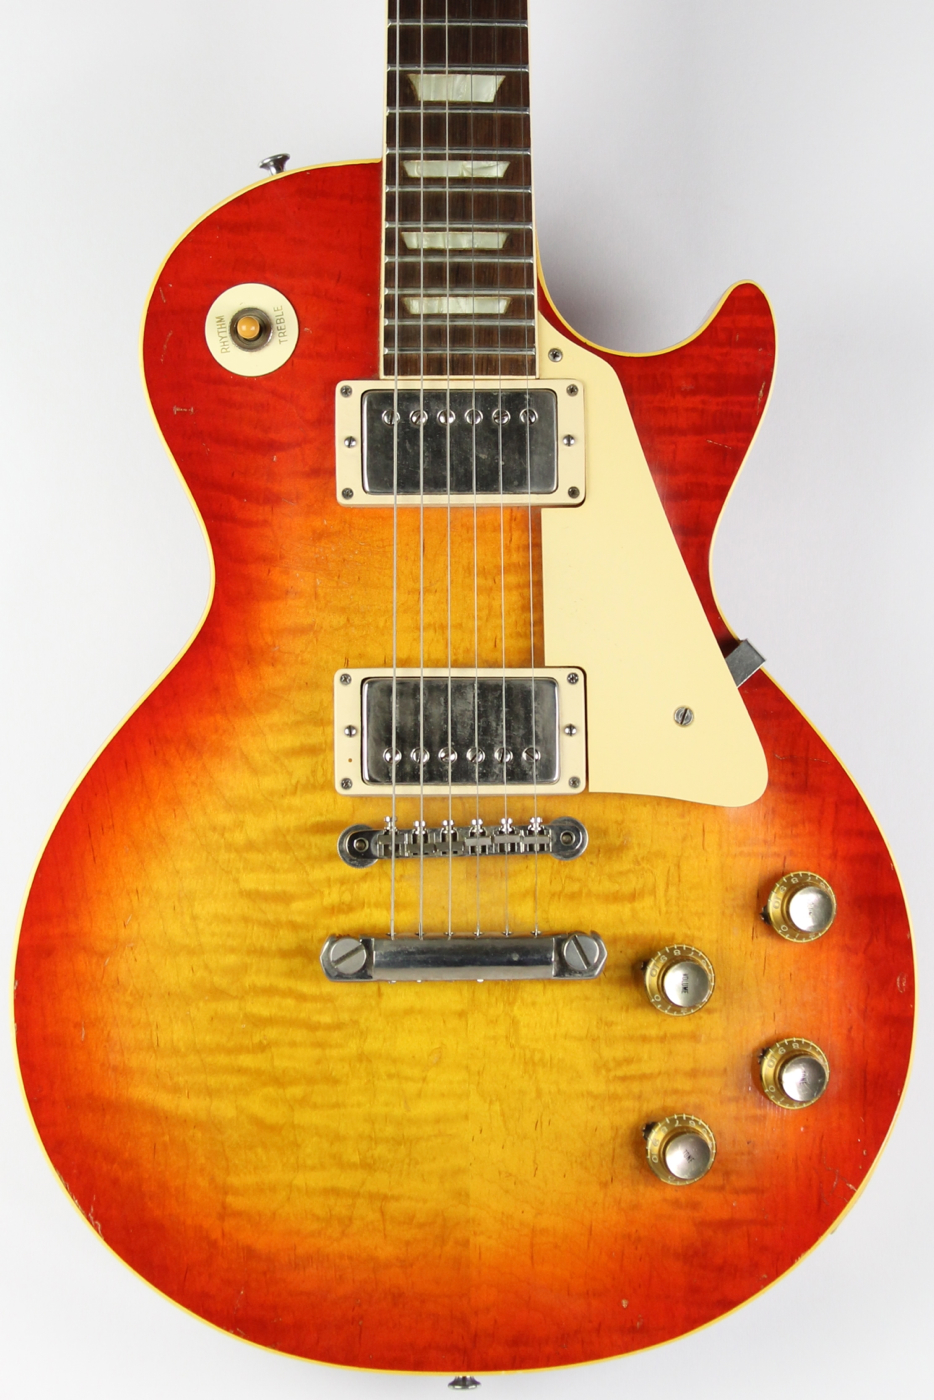 Gibson Les Paul Burst One Owner 1960 Sunburst Guitar For Sale Thunder ...